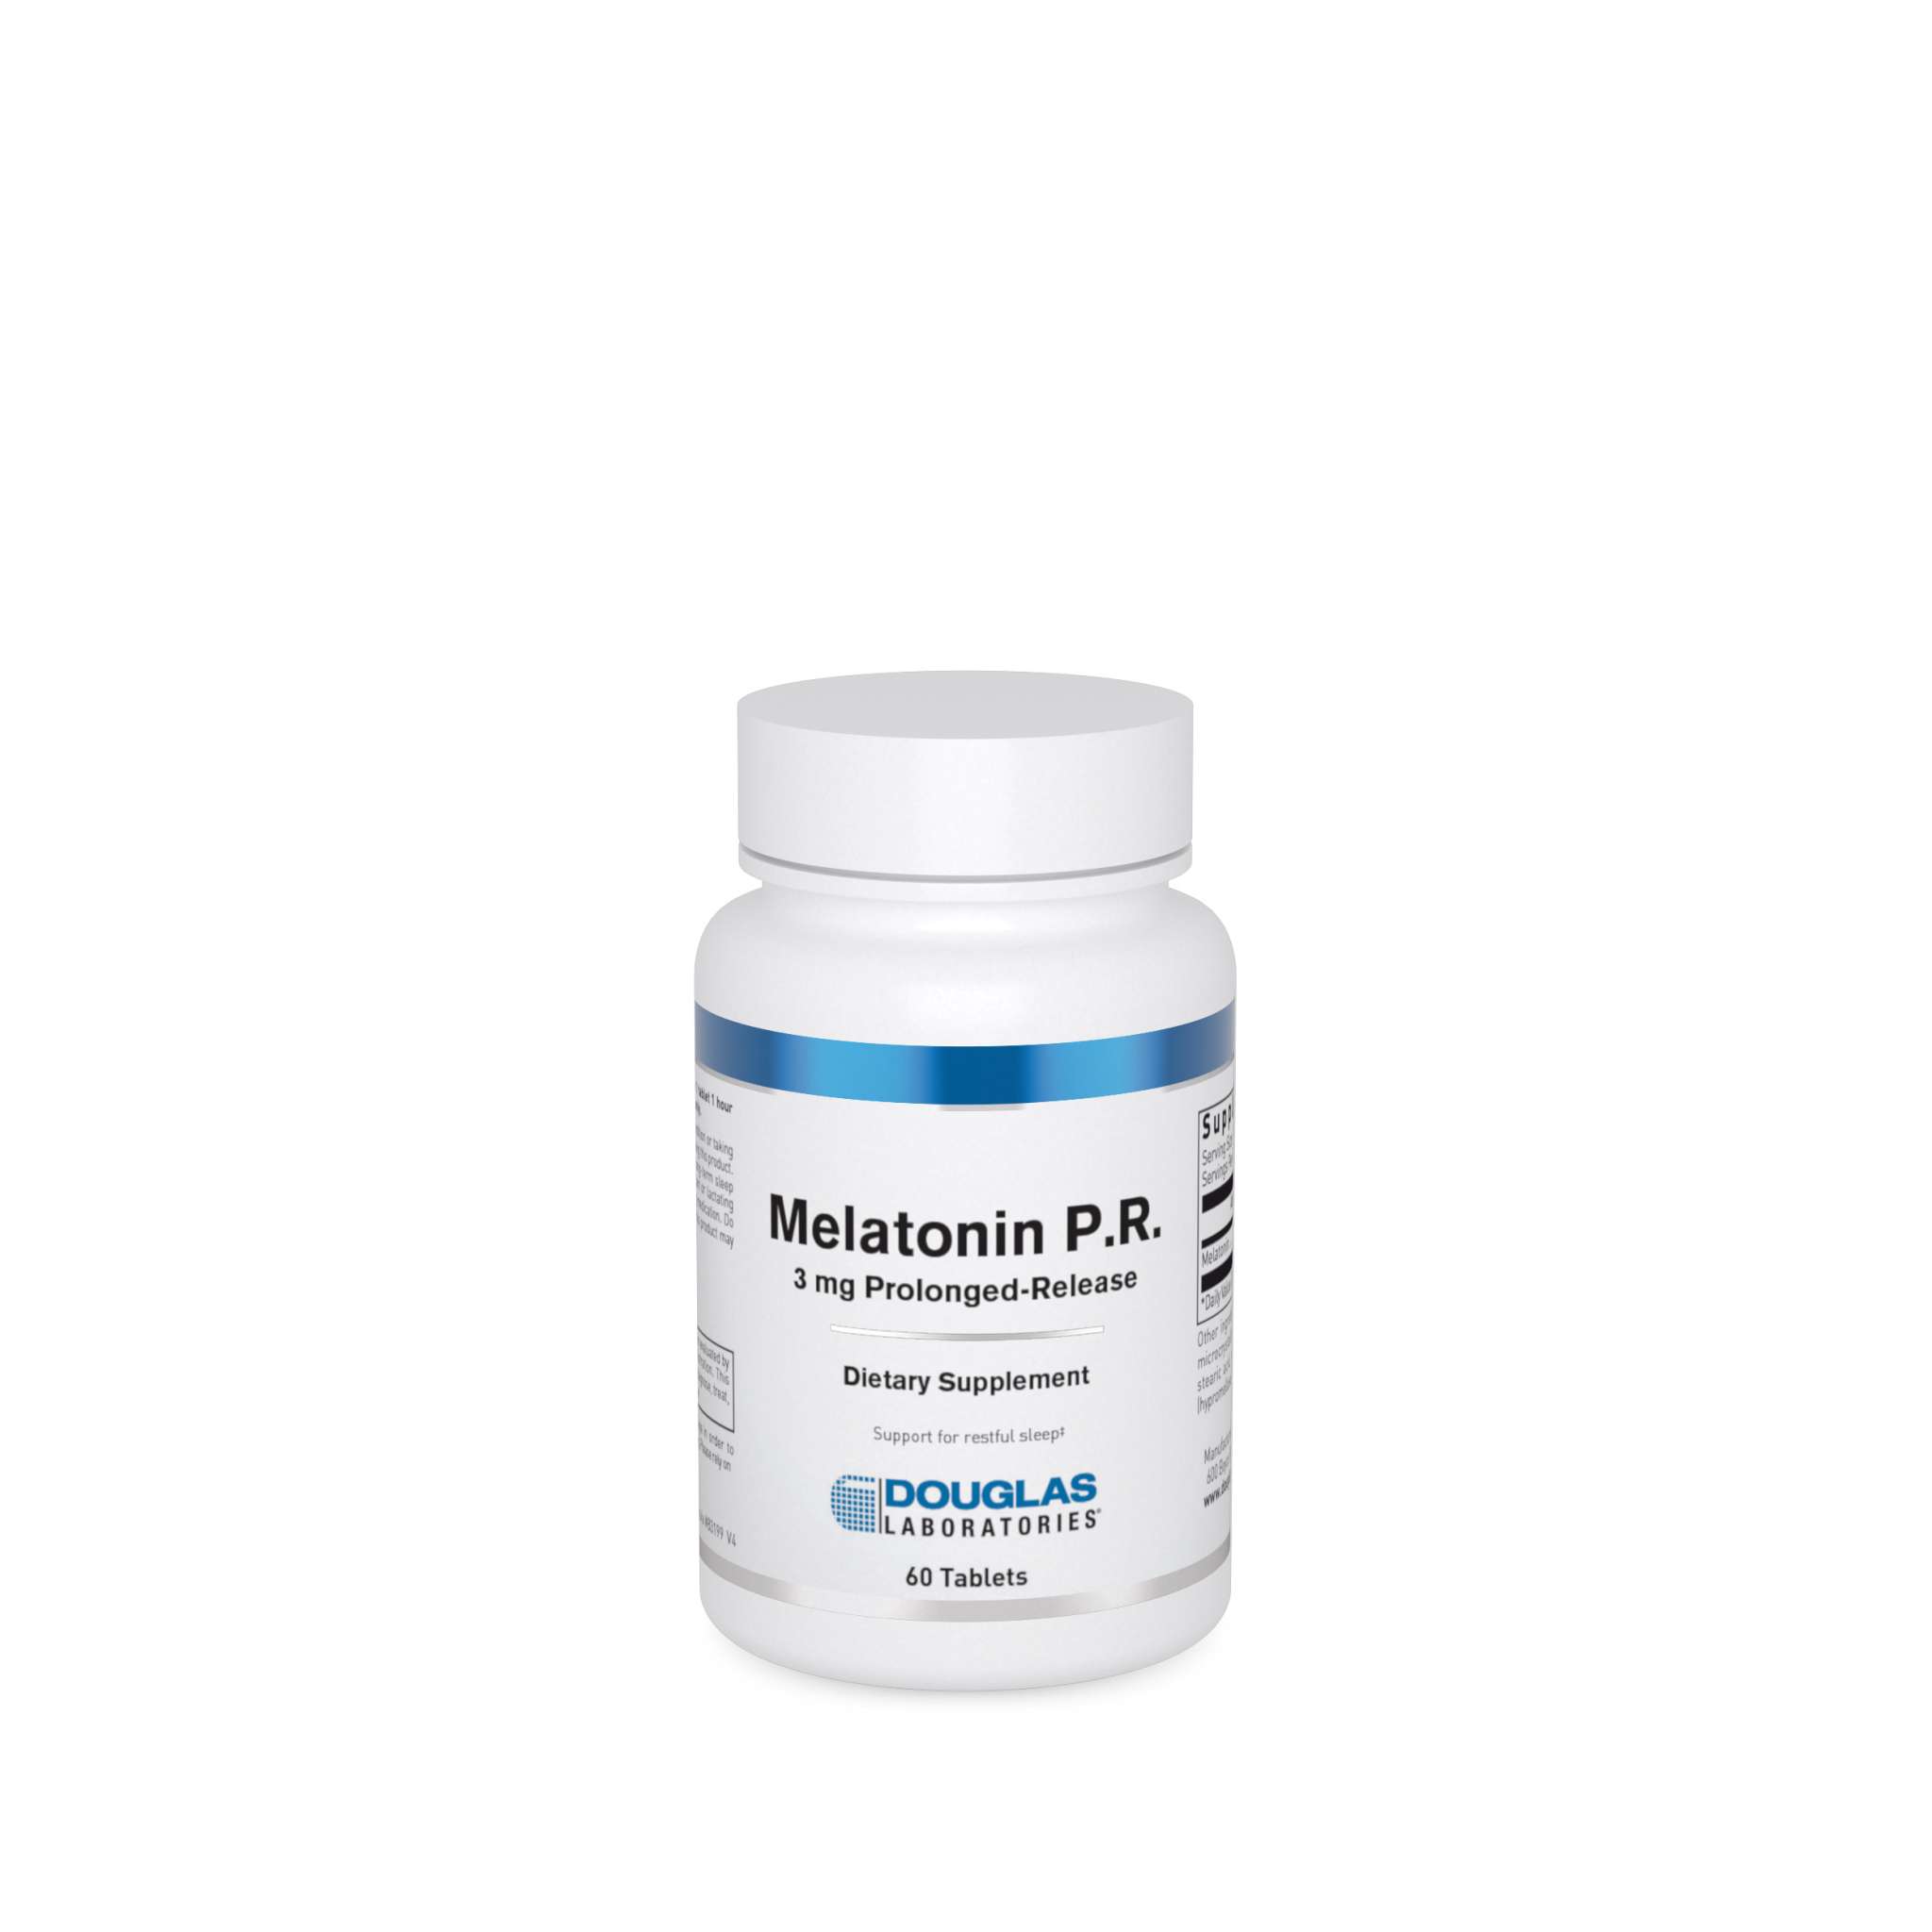 Douglas Laboratories - Melatonin P.R 3 mg